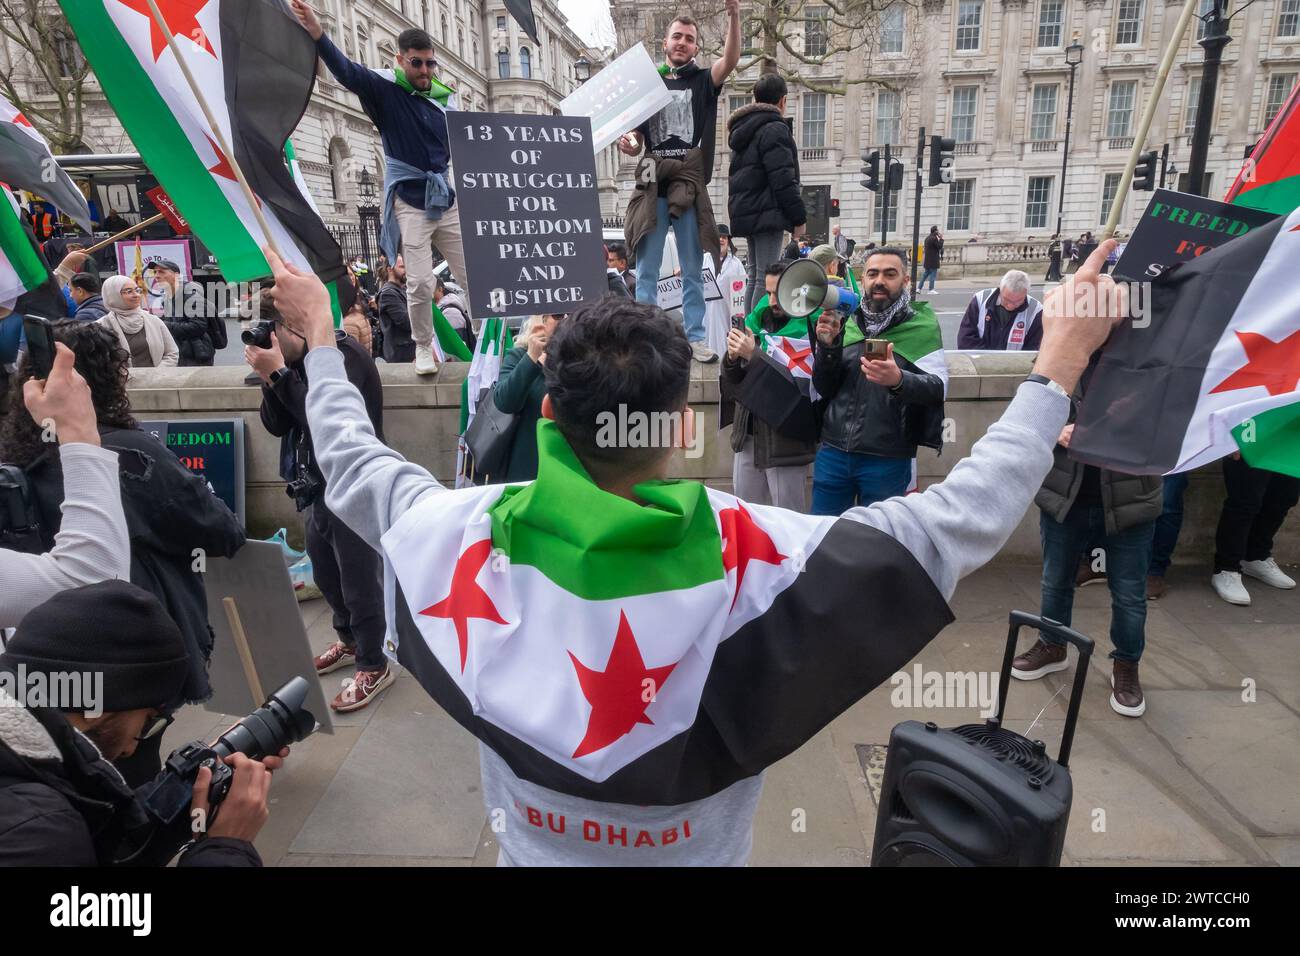 Londra, Regno Unito. 16 marzo 2024. Protesta siriana a Downing St nel tredicesimo anniversario della Rivoluzione siriana. Più della metà della popolazione siriana è stata sfollata con milioni di persone in fuga dal paese, mentre il regime di Asdsad ha commesso indescrivibili atrocità contro il popolo siriano, che si è alzato pacificamente per la democrazia, le riforme e la responsabilità. Hanno invitato tutti a ricordare quei tanti siriani che sono stati uccisi e a continuare a sostenere le richieste di democrazia, riforme e responsabilità. Peter Marshall/Alamy Live News Foto Stock